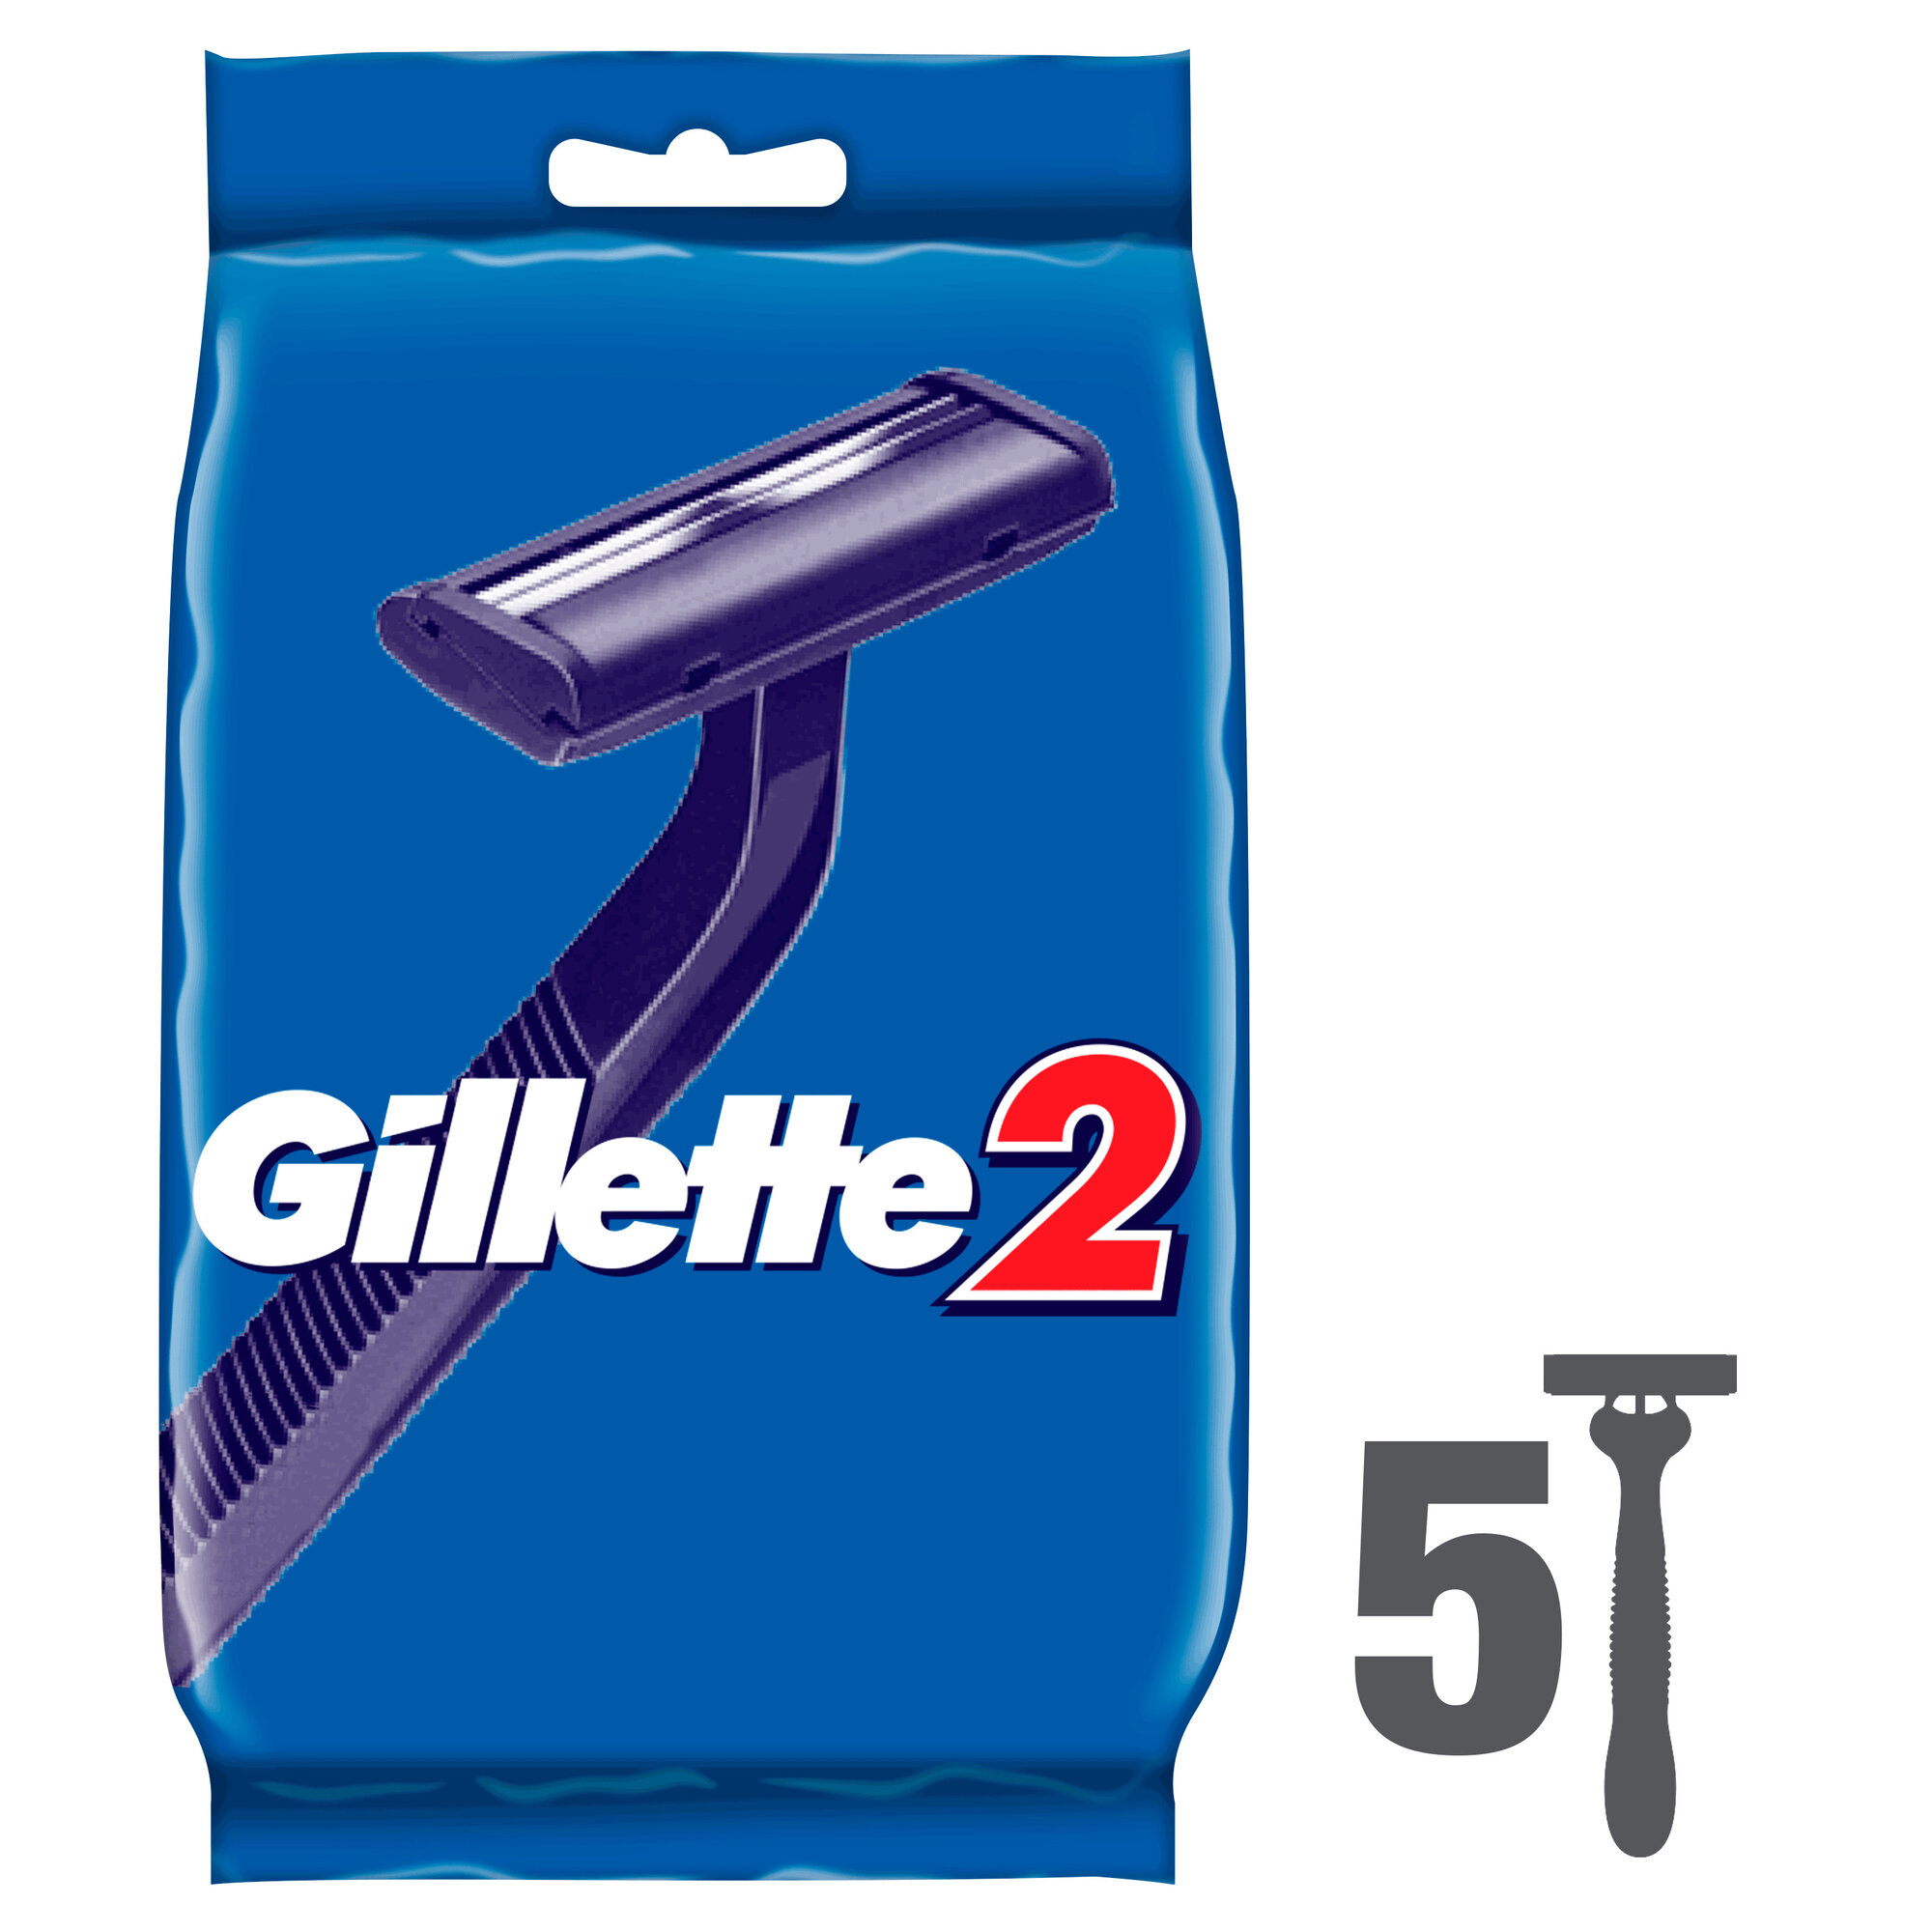 Одноразовый бритвенный станок Gillette 2 4+1 шт